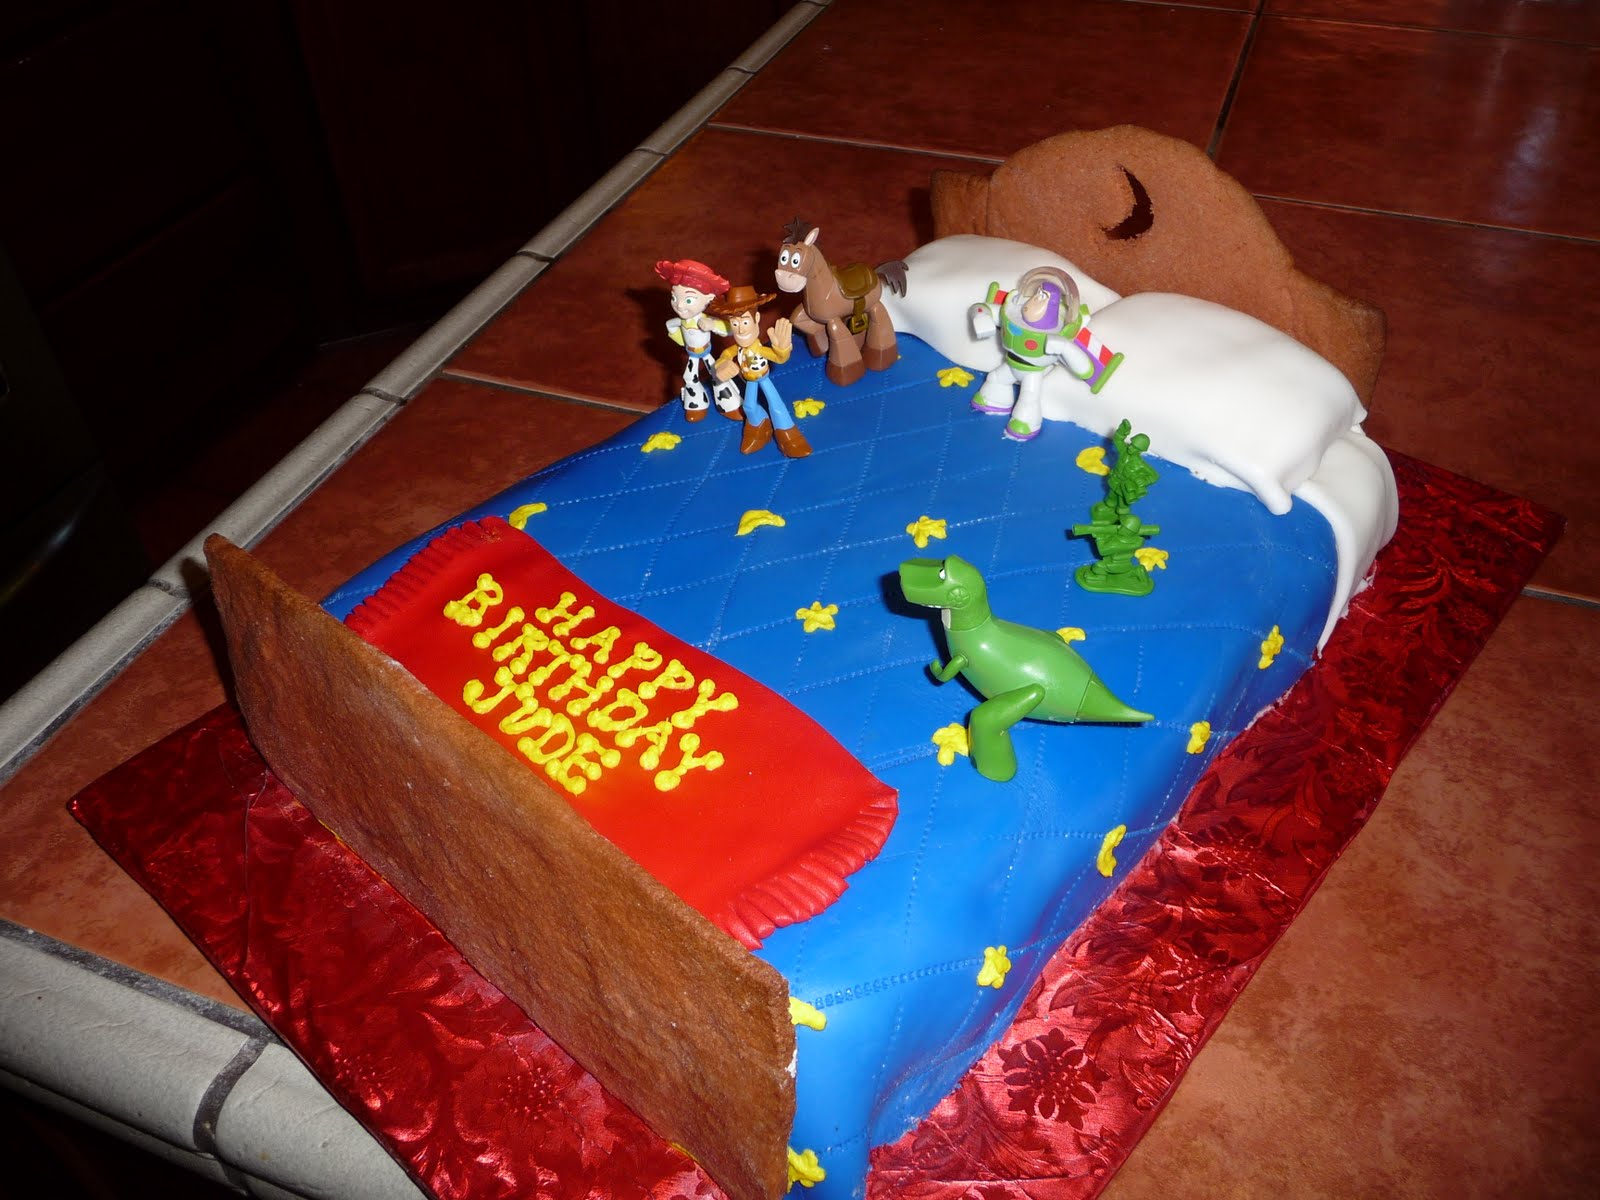 Toy Story Cake Idea